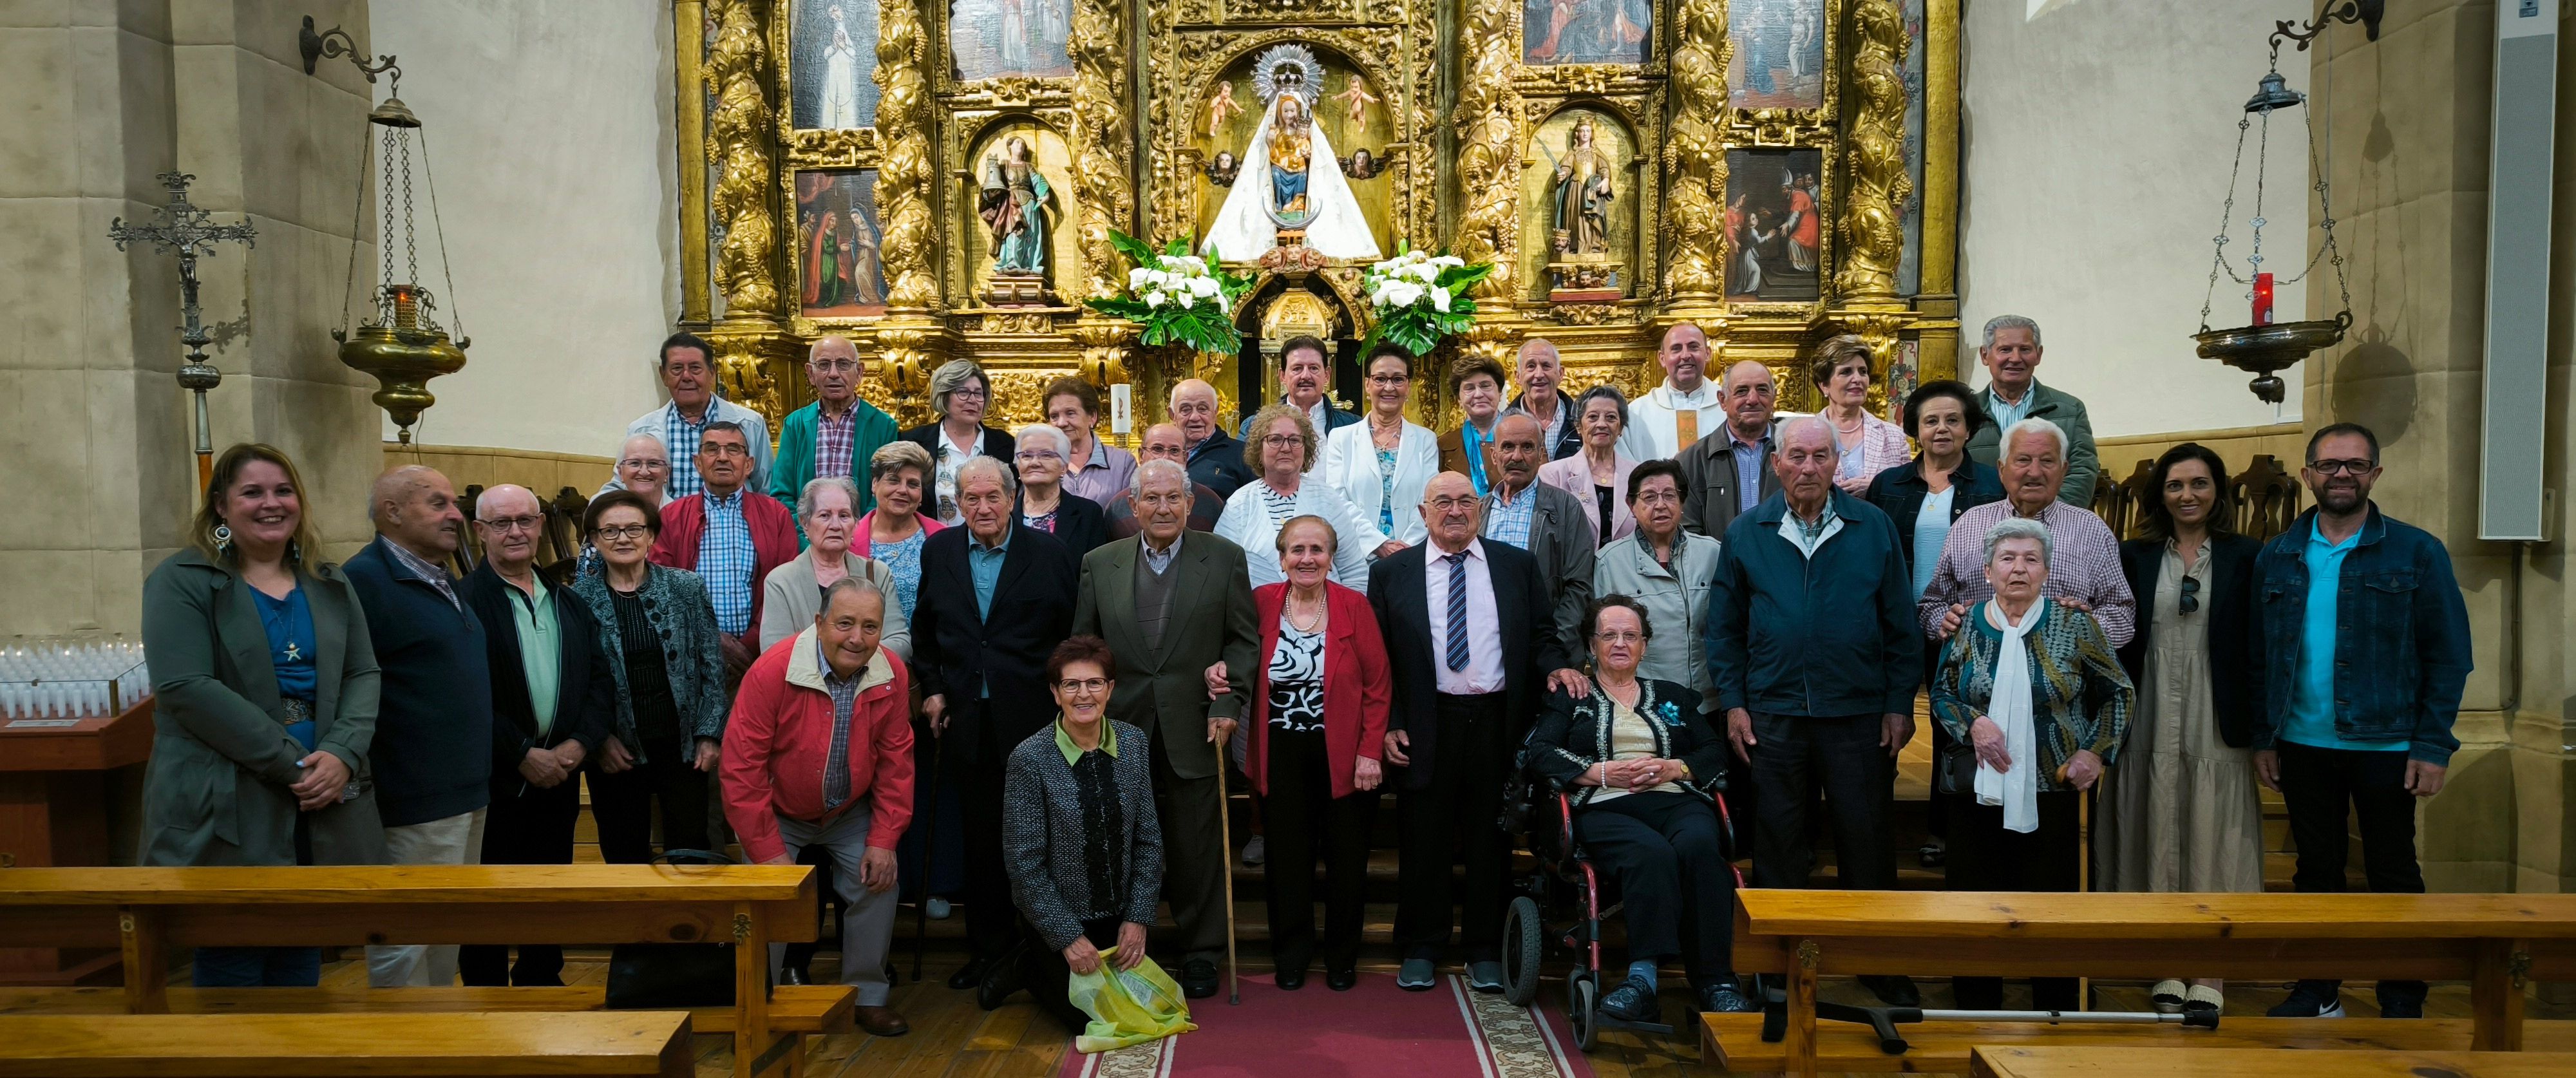 Foto de familia en la iglesia de la localidad con los matrimonios de más de 50 años homenajeados por parte del consistorio paramés. | L.N.C.